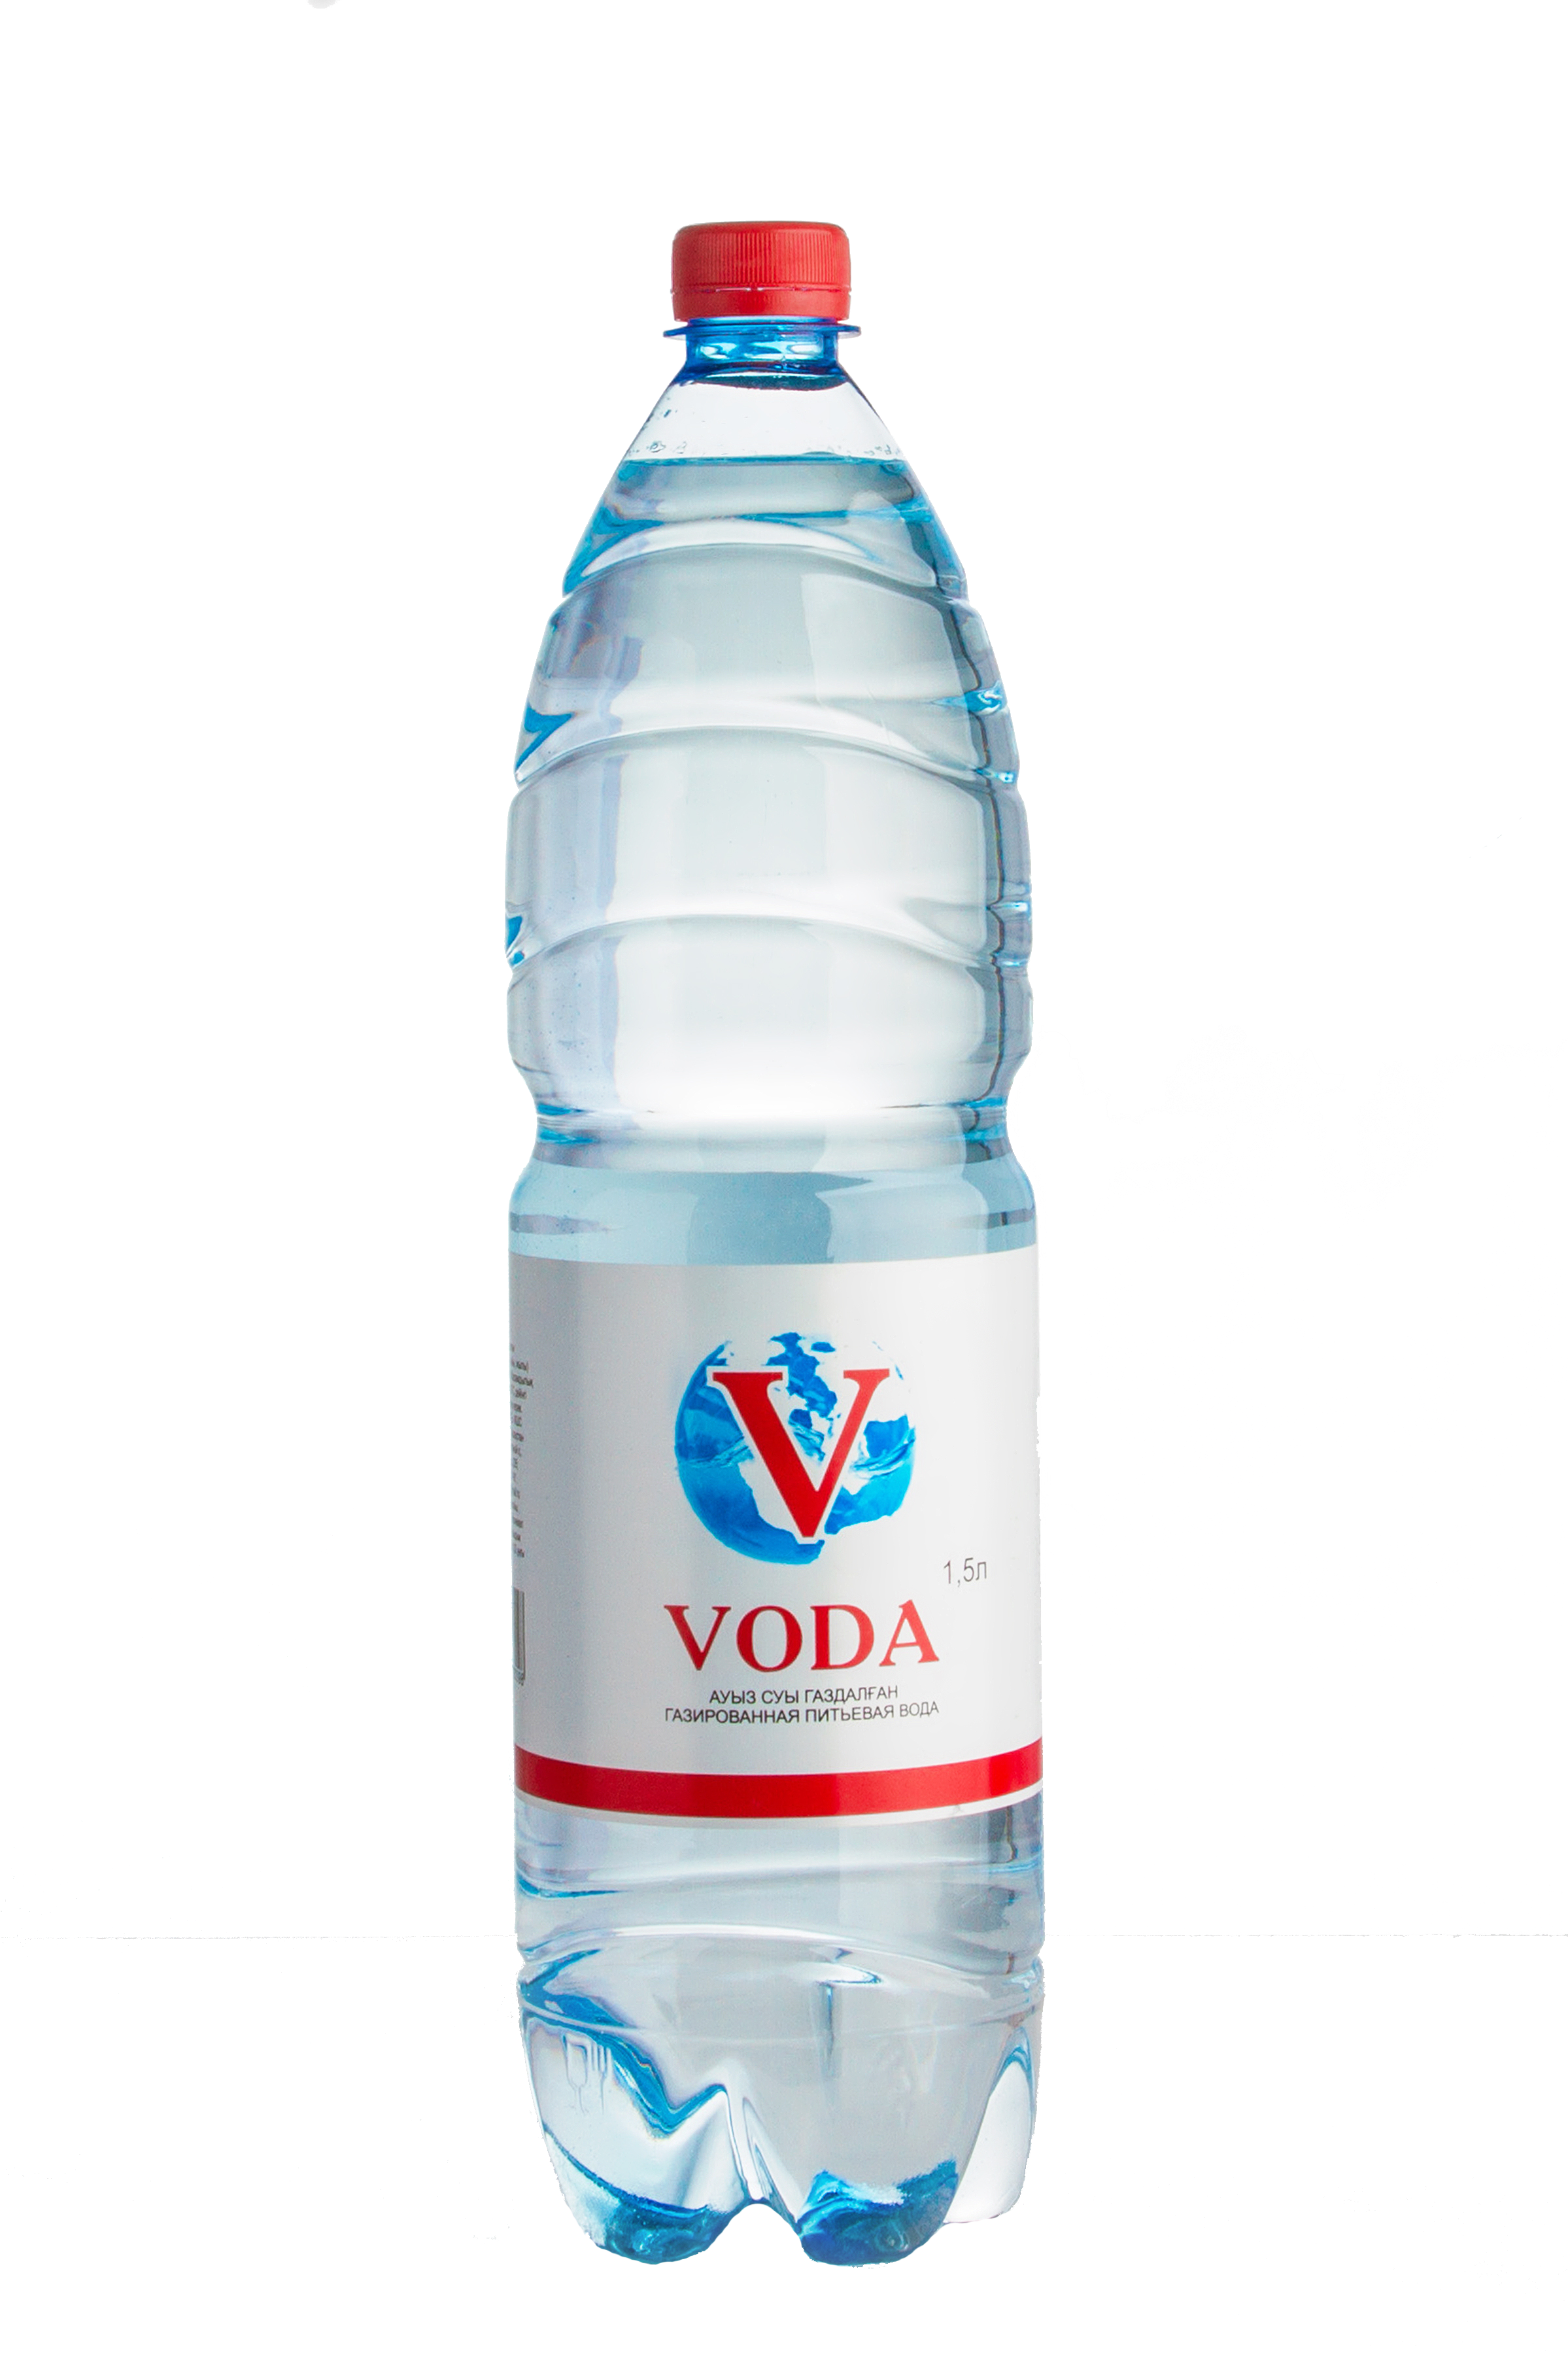 Вода питьевая газированная “Voda” - 1,5л